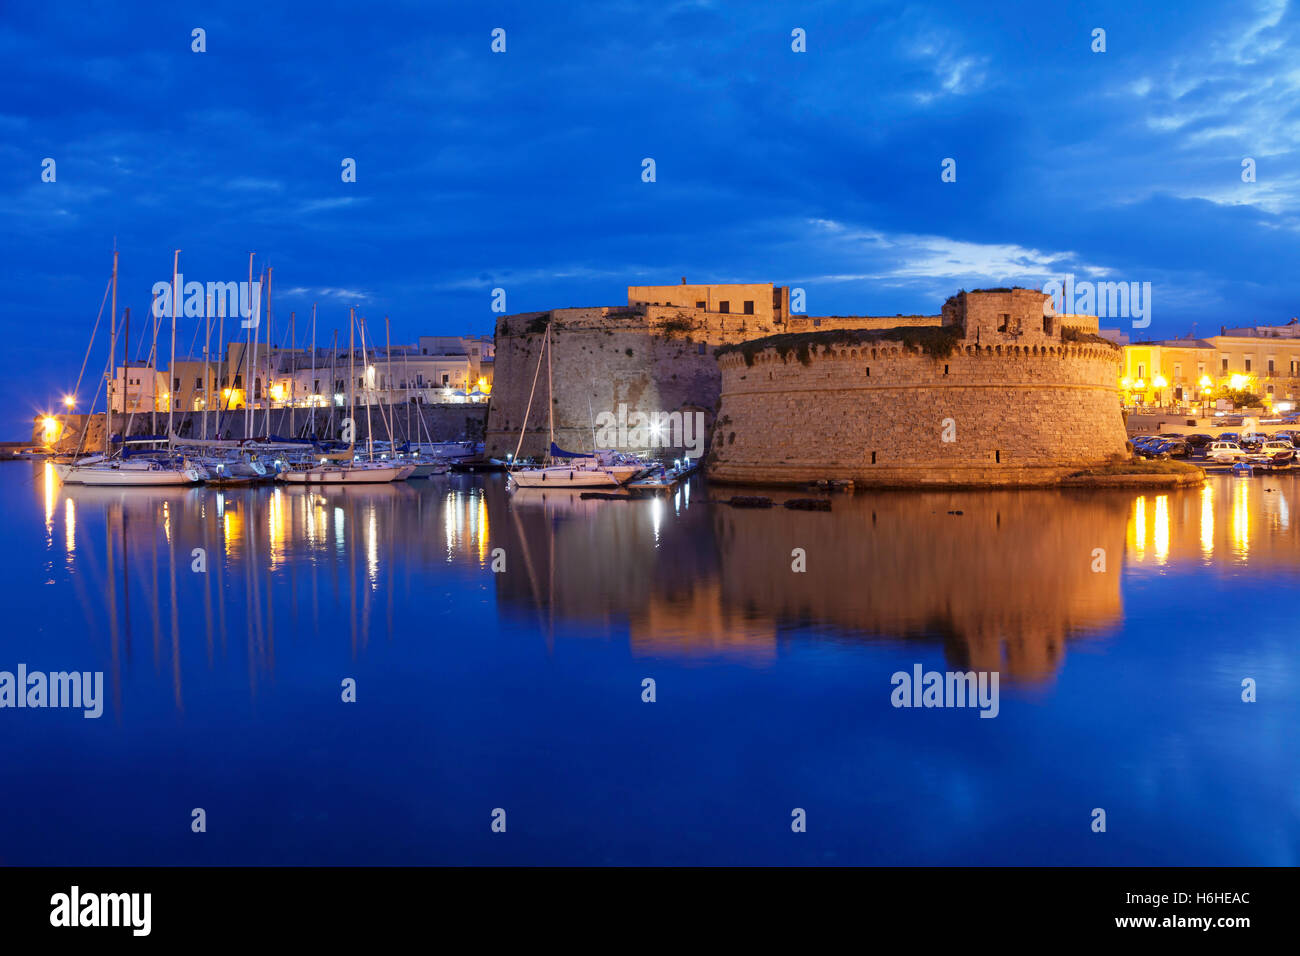 Centro histórico con el castillo, la muralla de la ciudad y del puerto, al anochecer, Gallipoli, Provincia de Lecce, la península de Salento, Puglia, Italia Foto de stock